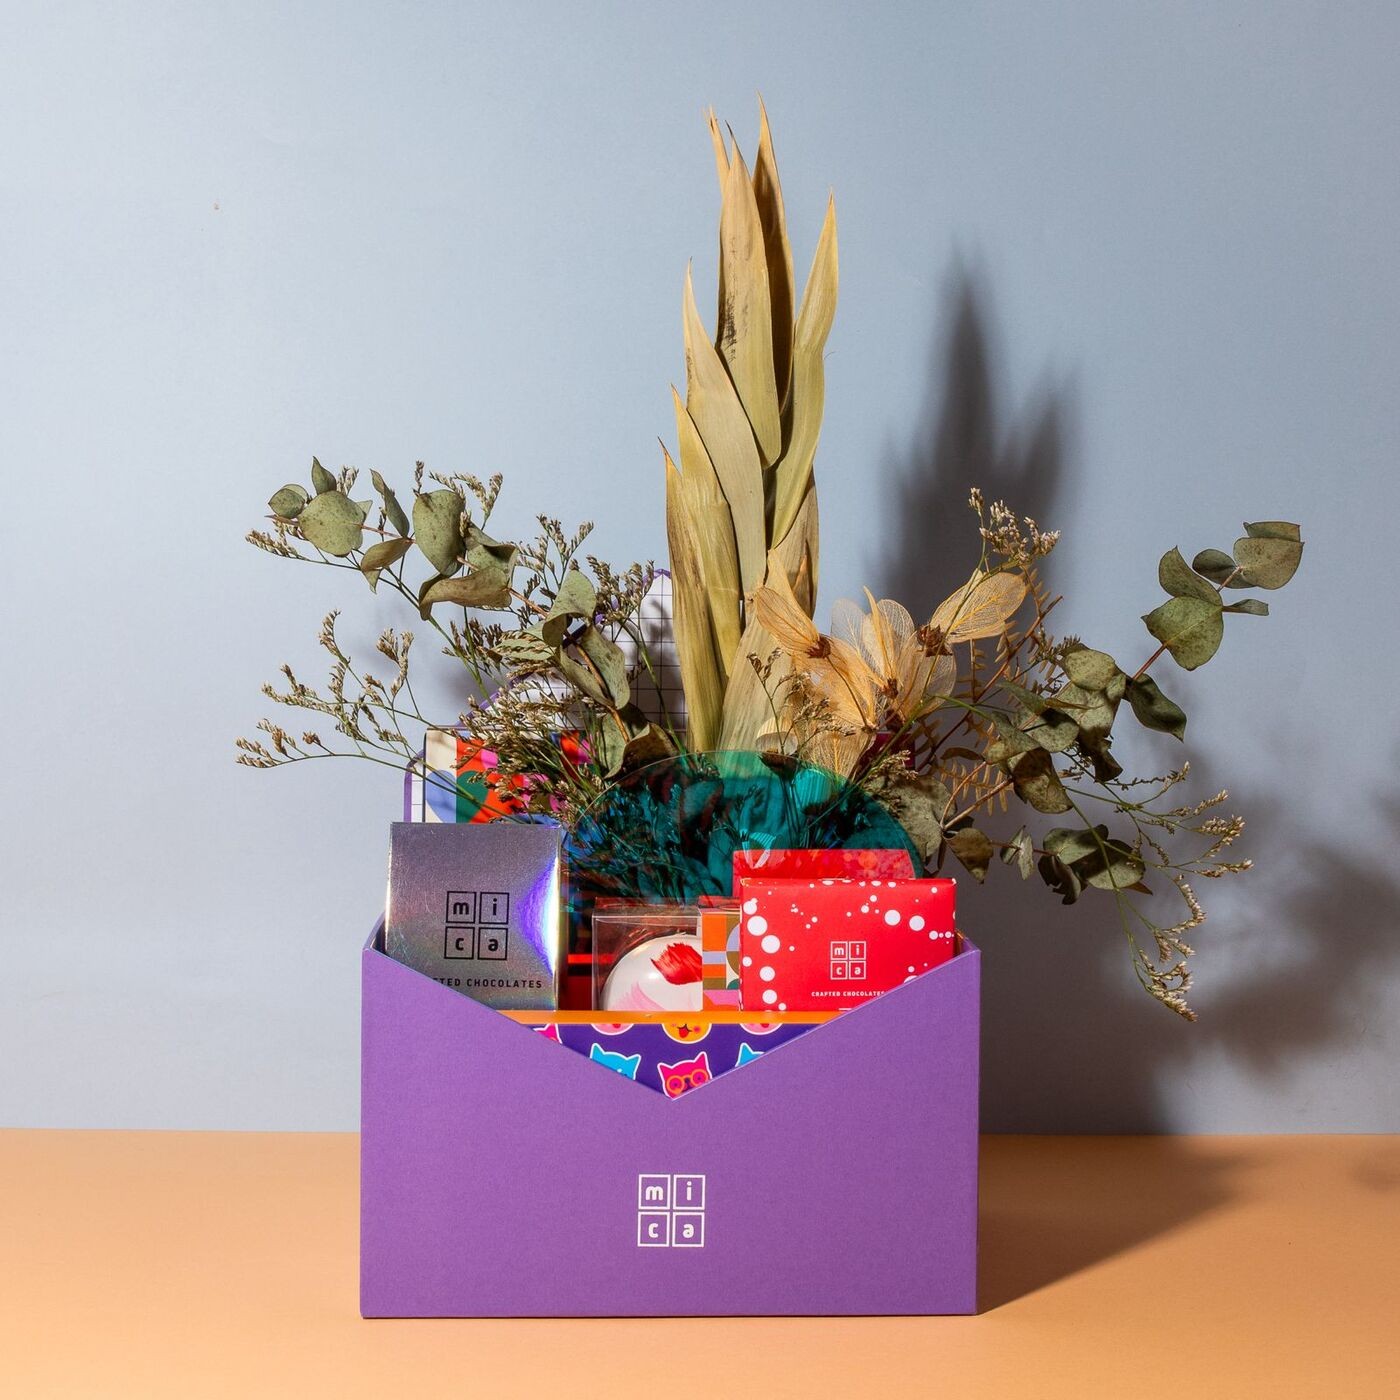 Caixa personalizada, da Mica, é montada em formato de envelope roxo com vaso de flores secas e chocolates escolhidos pelos clientes. O presente sai a partir de R$ 300 — Foto: Mica Chocolates / Divulgação